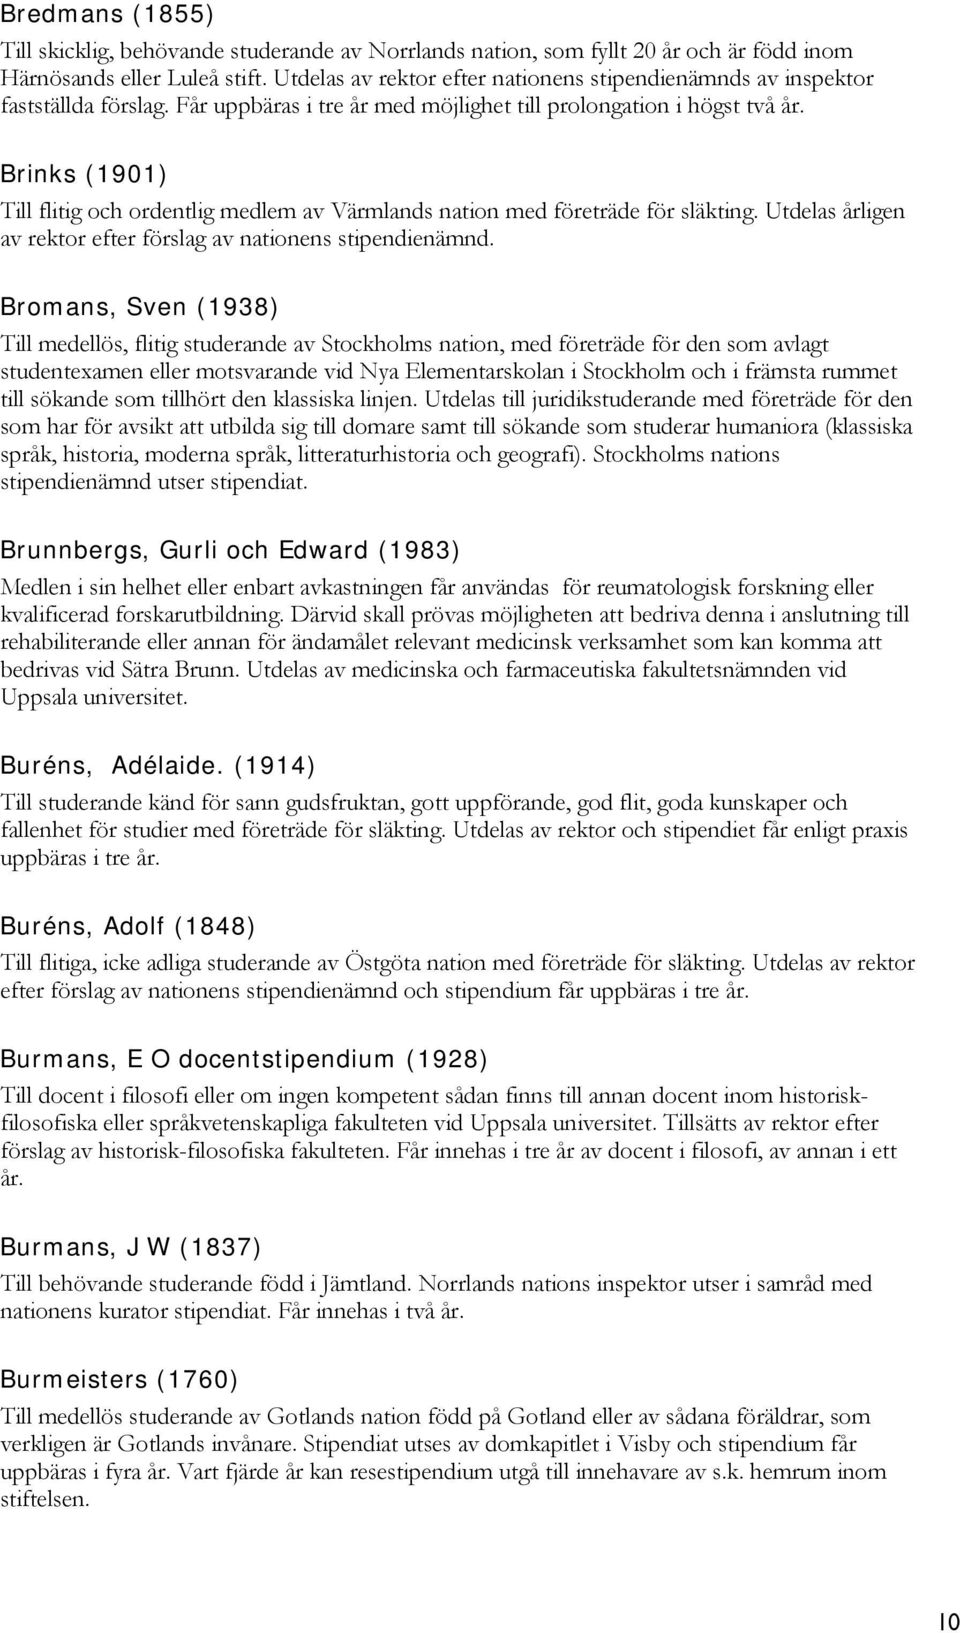 Brinks (1901) Till flitig och ordentlig medlem av Värmlands nation med företräde för släkting. Utdelas årligen av rektor efter förslag av nationens stipendienämnd.